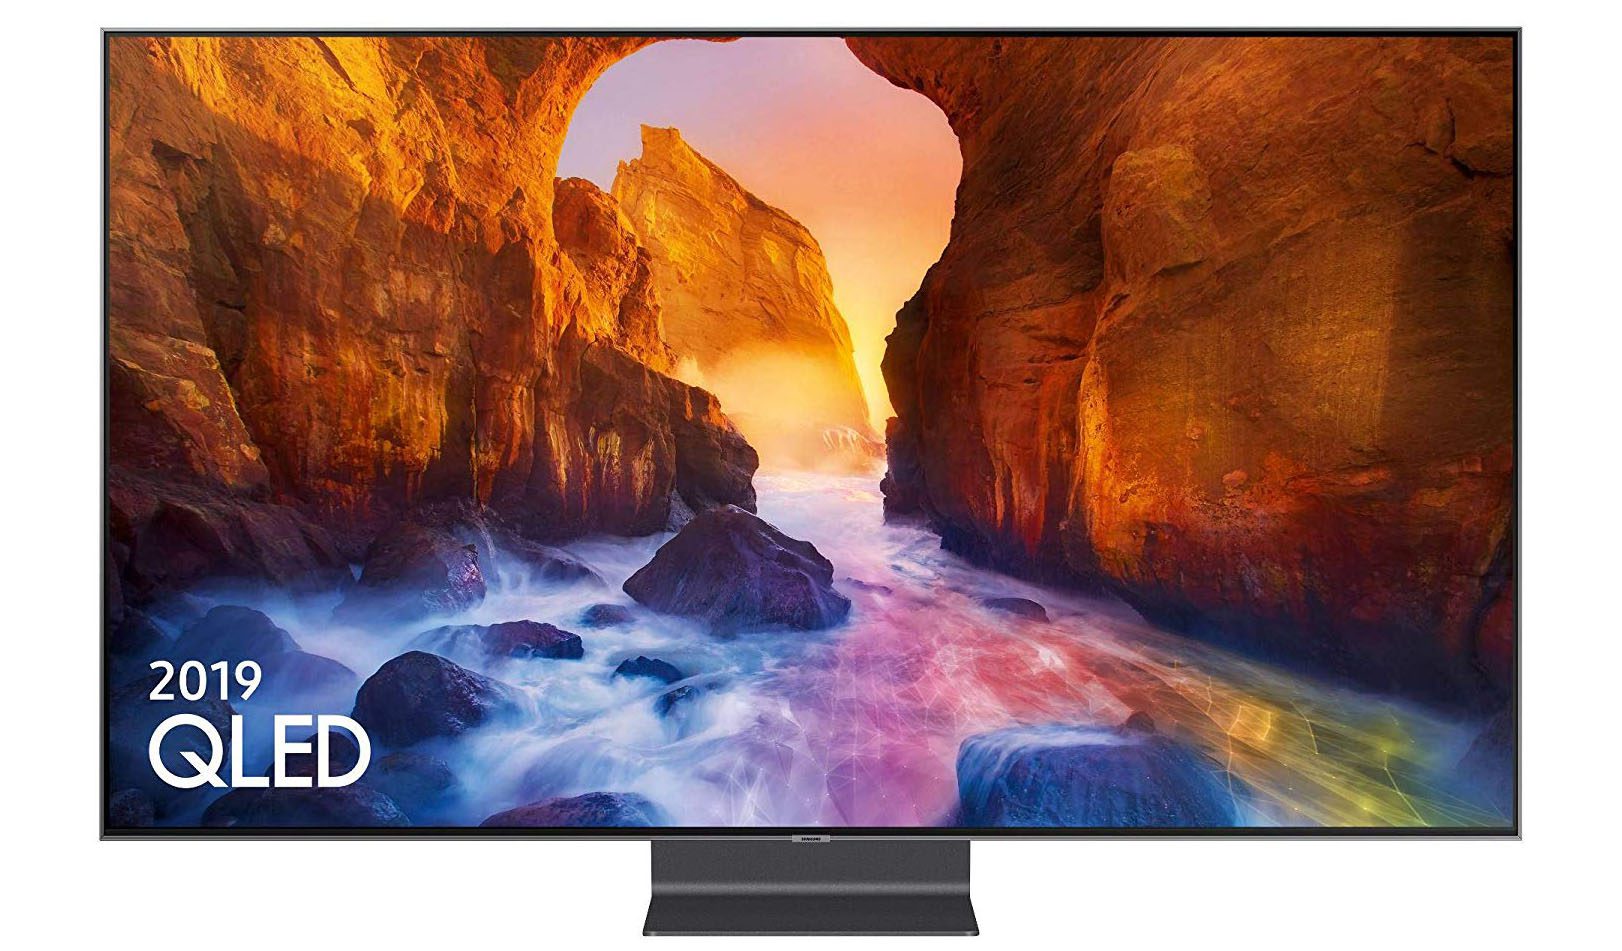 Đánh giá Samsung Q90R (QE65Q90R): TV QLED chúng tôi muốn chúng tôi có thể đủ khả năng